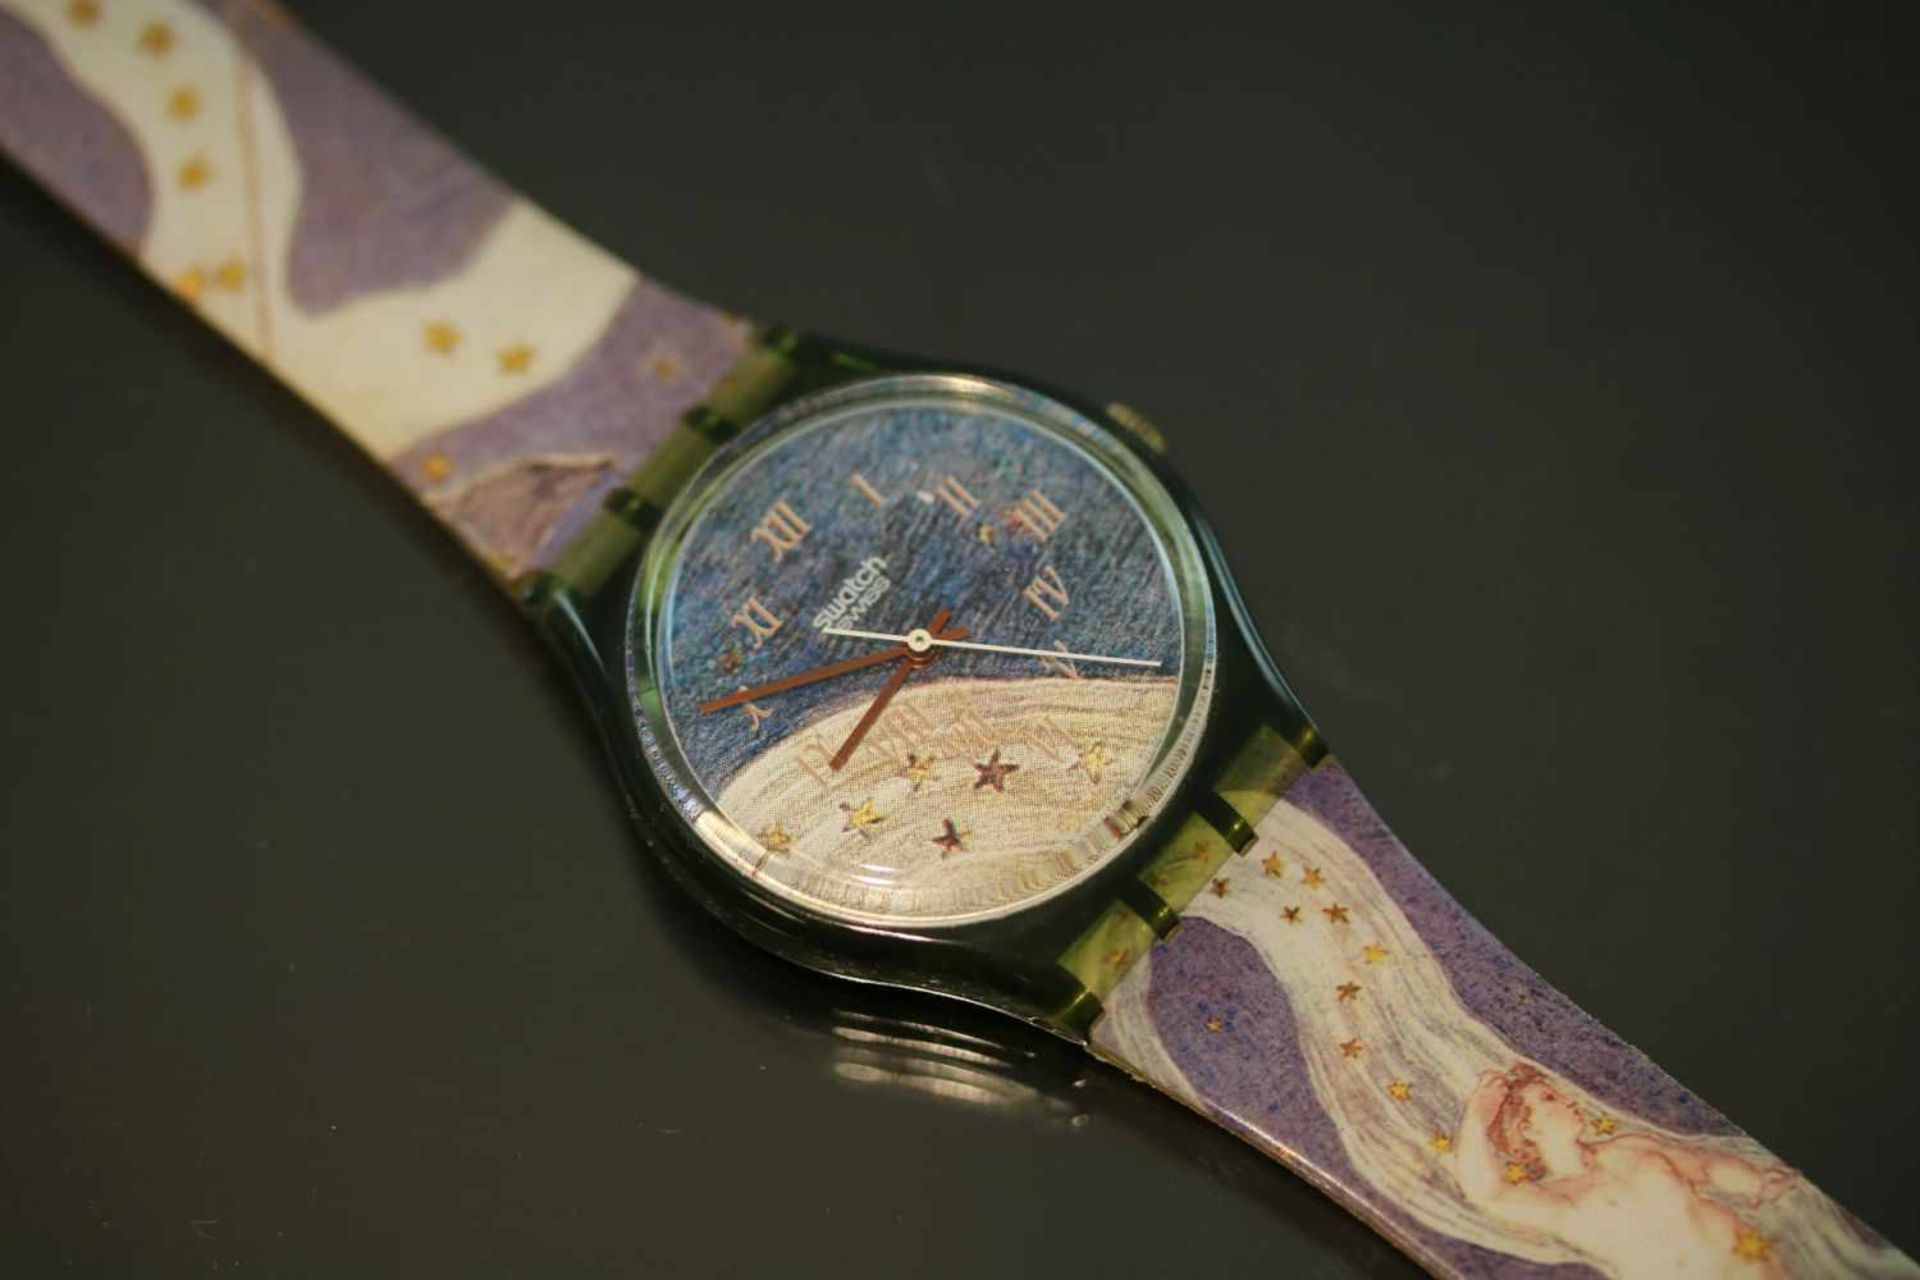 Swatch & Art-Uhr Quartz-Werk Silikon-Band Gehäusedurchmesser: 34 mm- - -25.00 % buyer's premium on